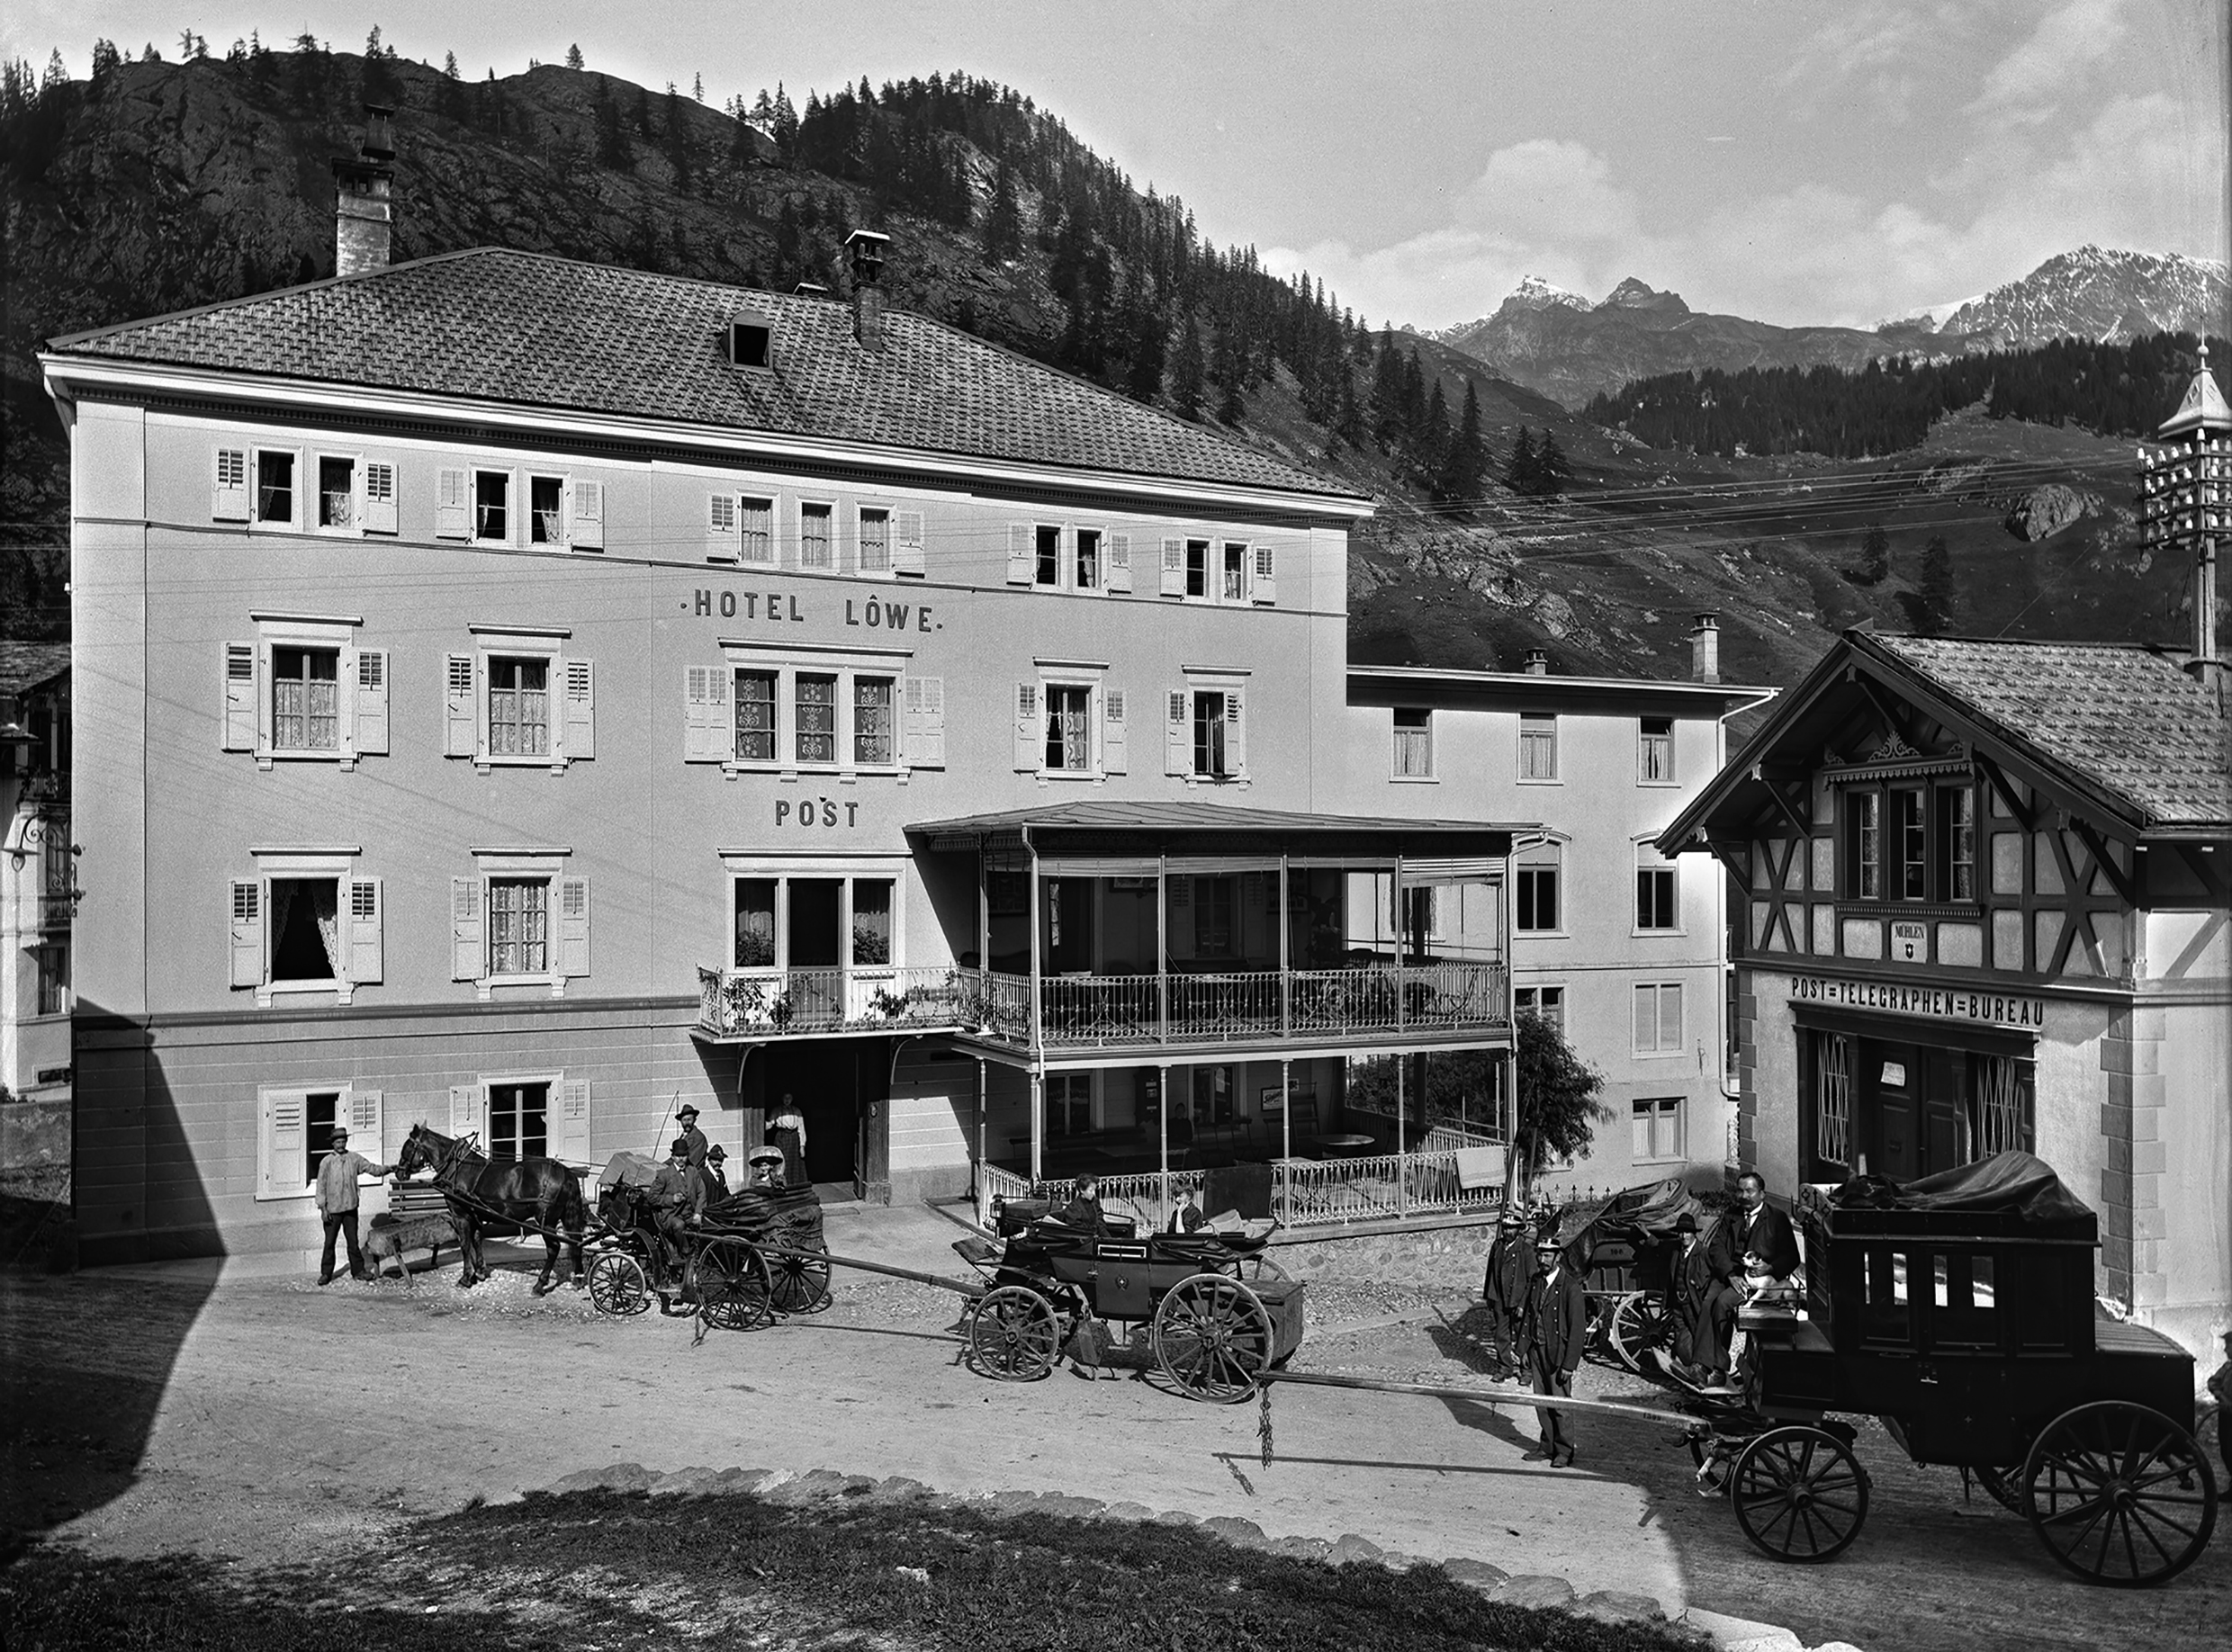 Post Hotel Löwe in Mulegns. 